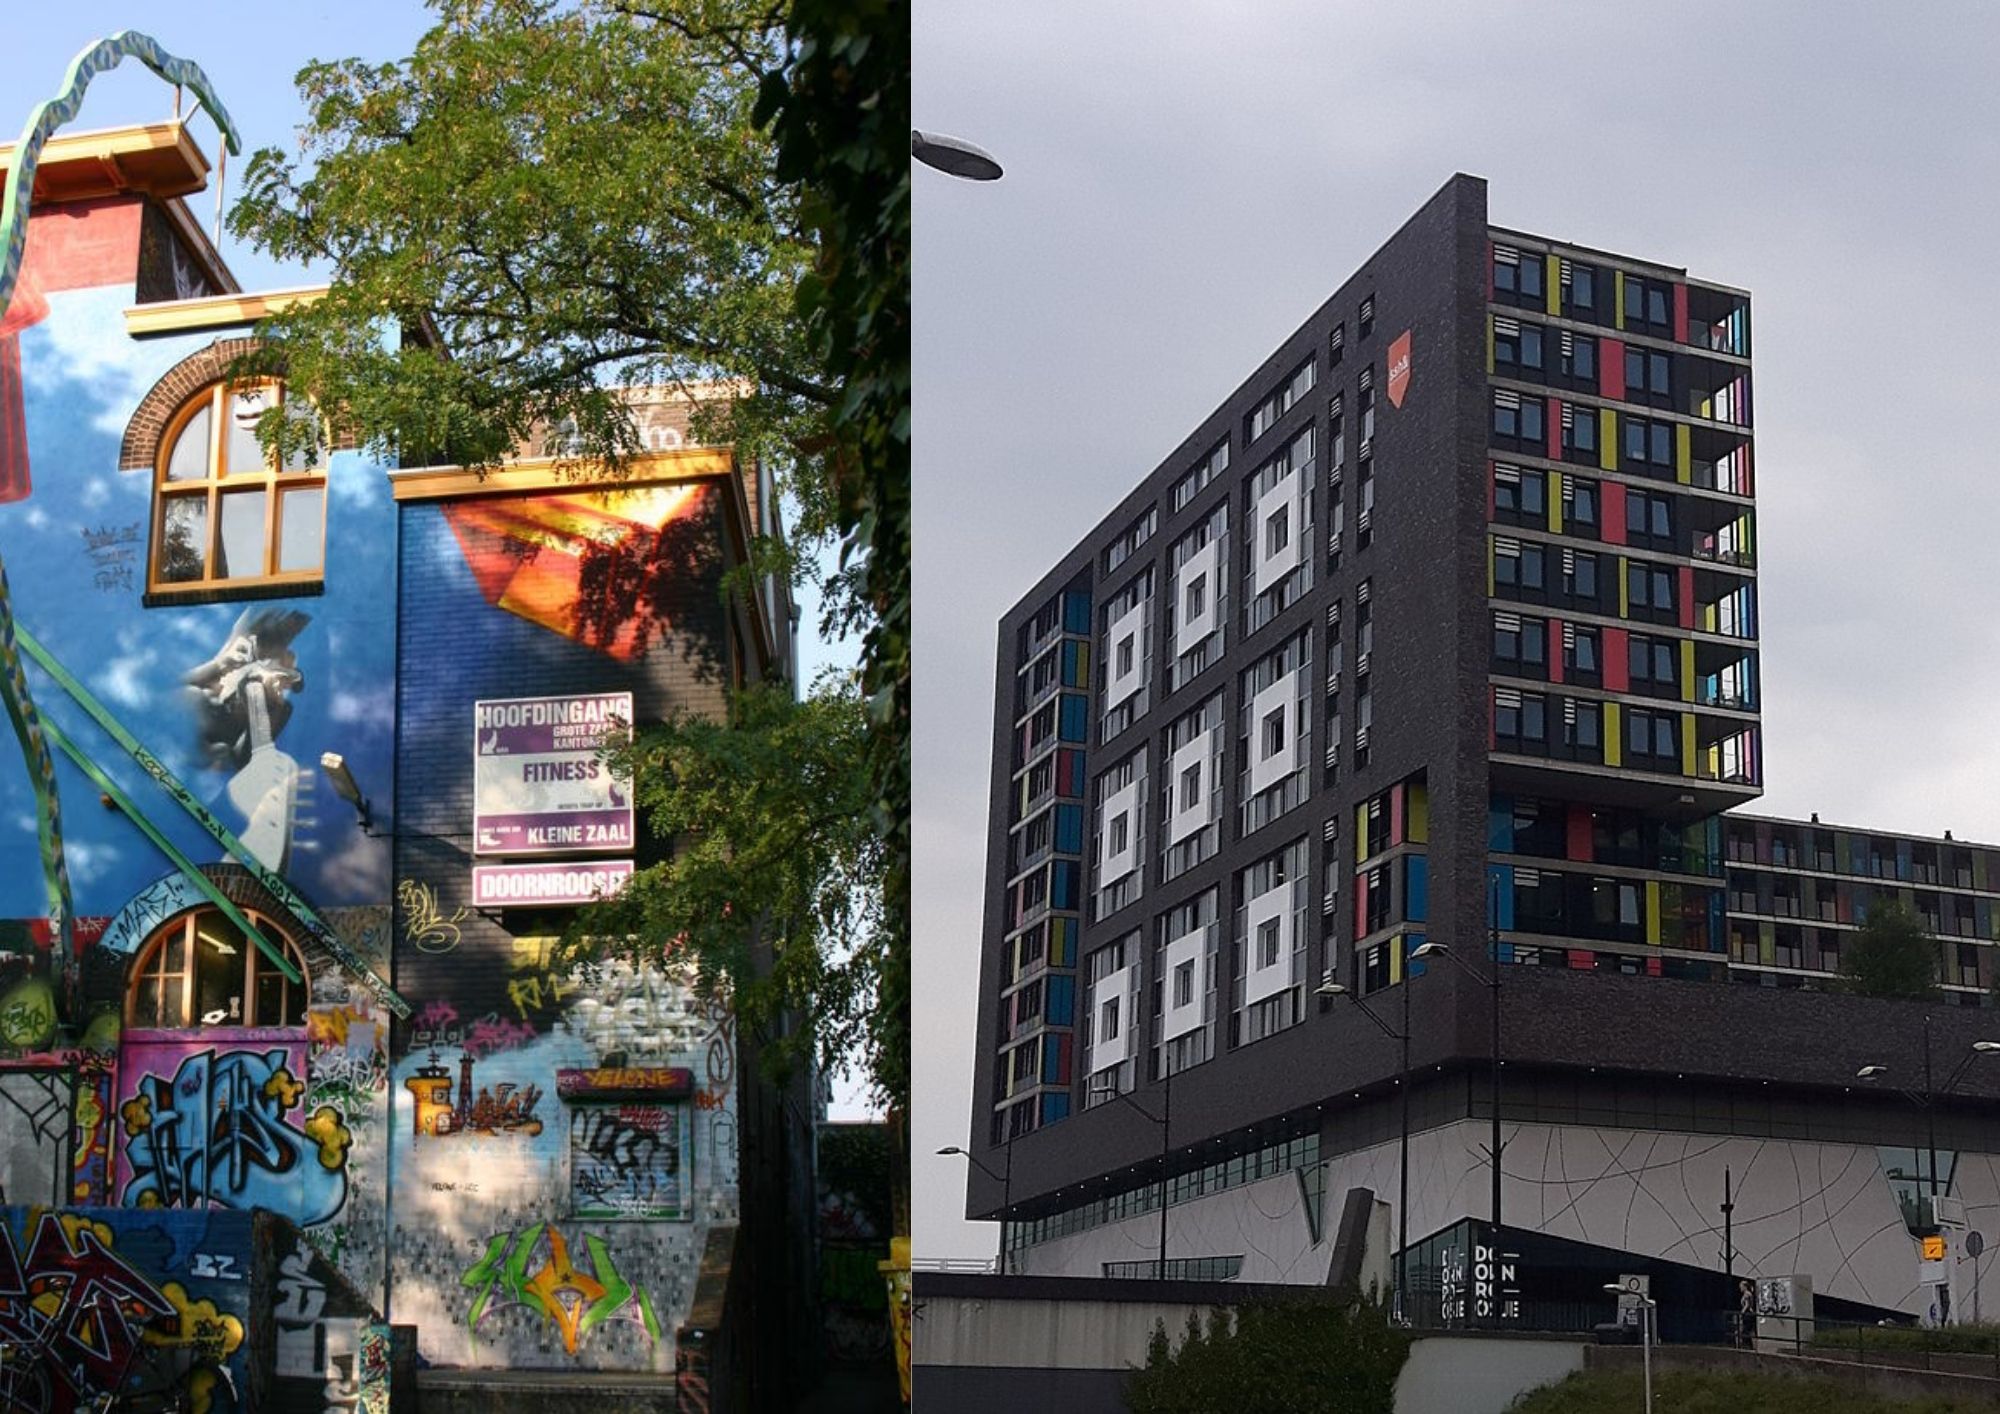 Doornroosje: stará budova vlevo a nová vpravo. | Foto: Ilse Lambert (L) and FakirNL (R), Wikimedia Commons